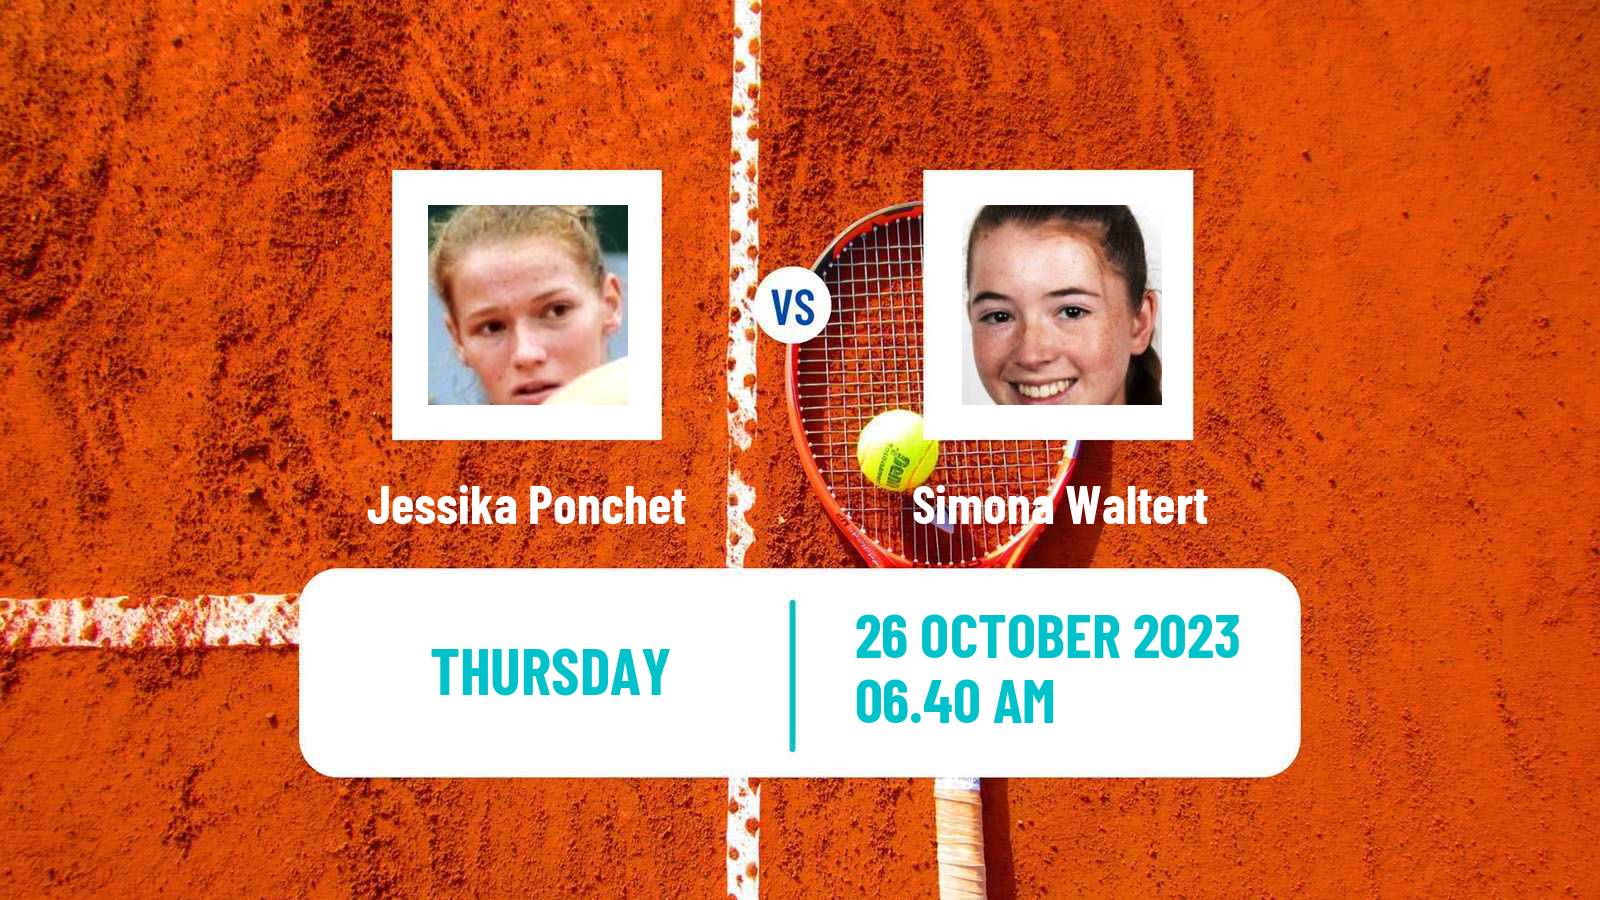 Tennis ITF W80 Poitiers Women Jessika Ponchet - Simona Waltert